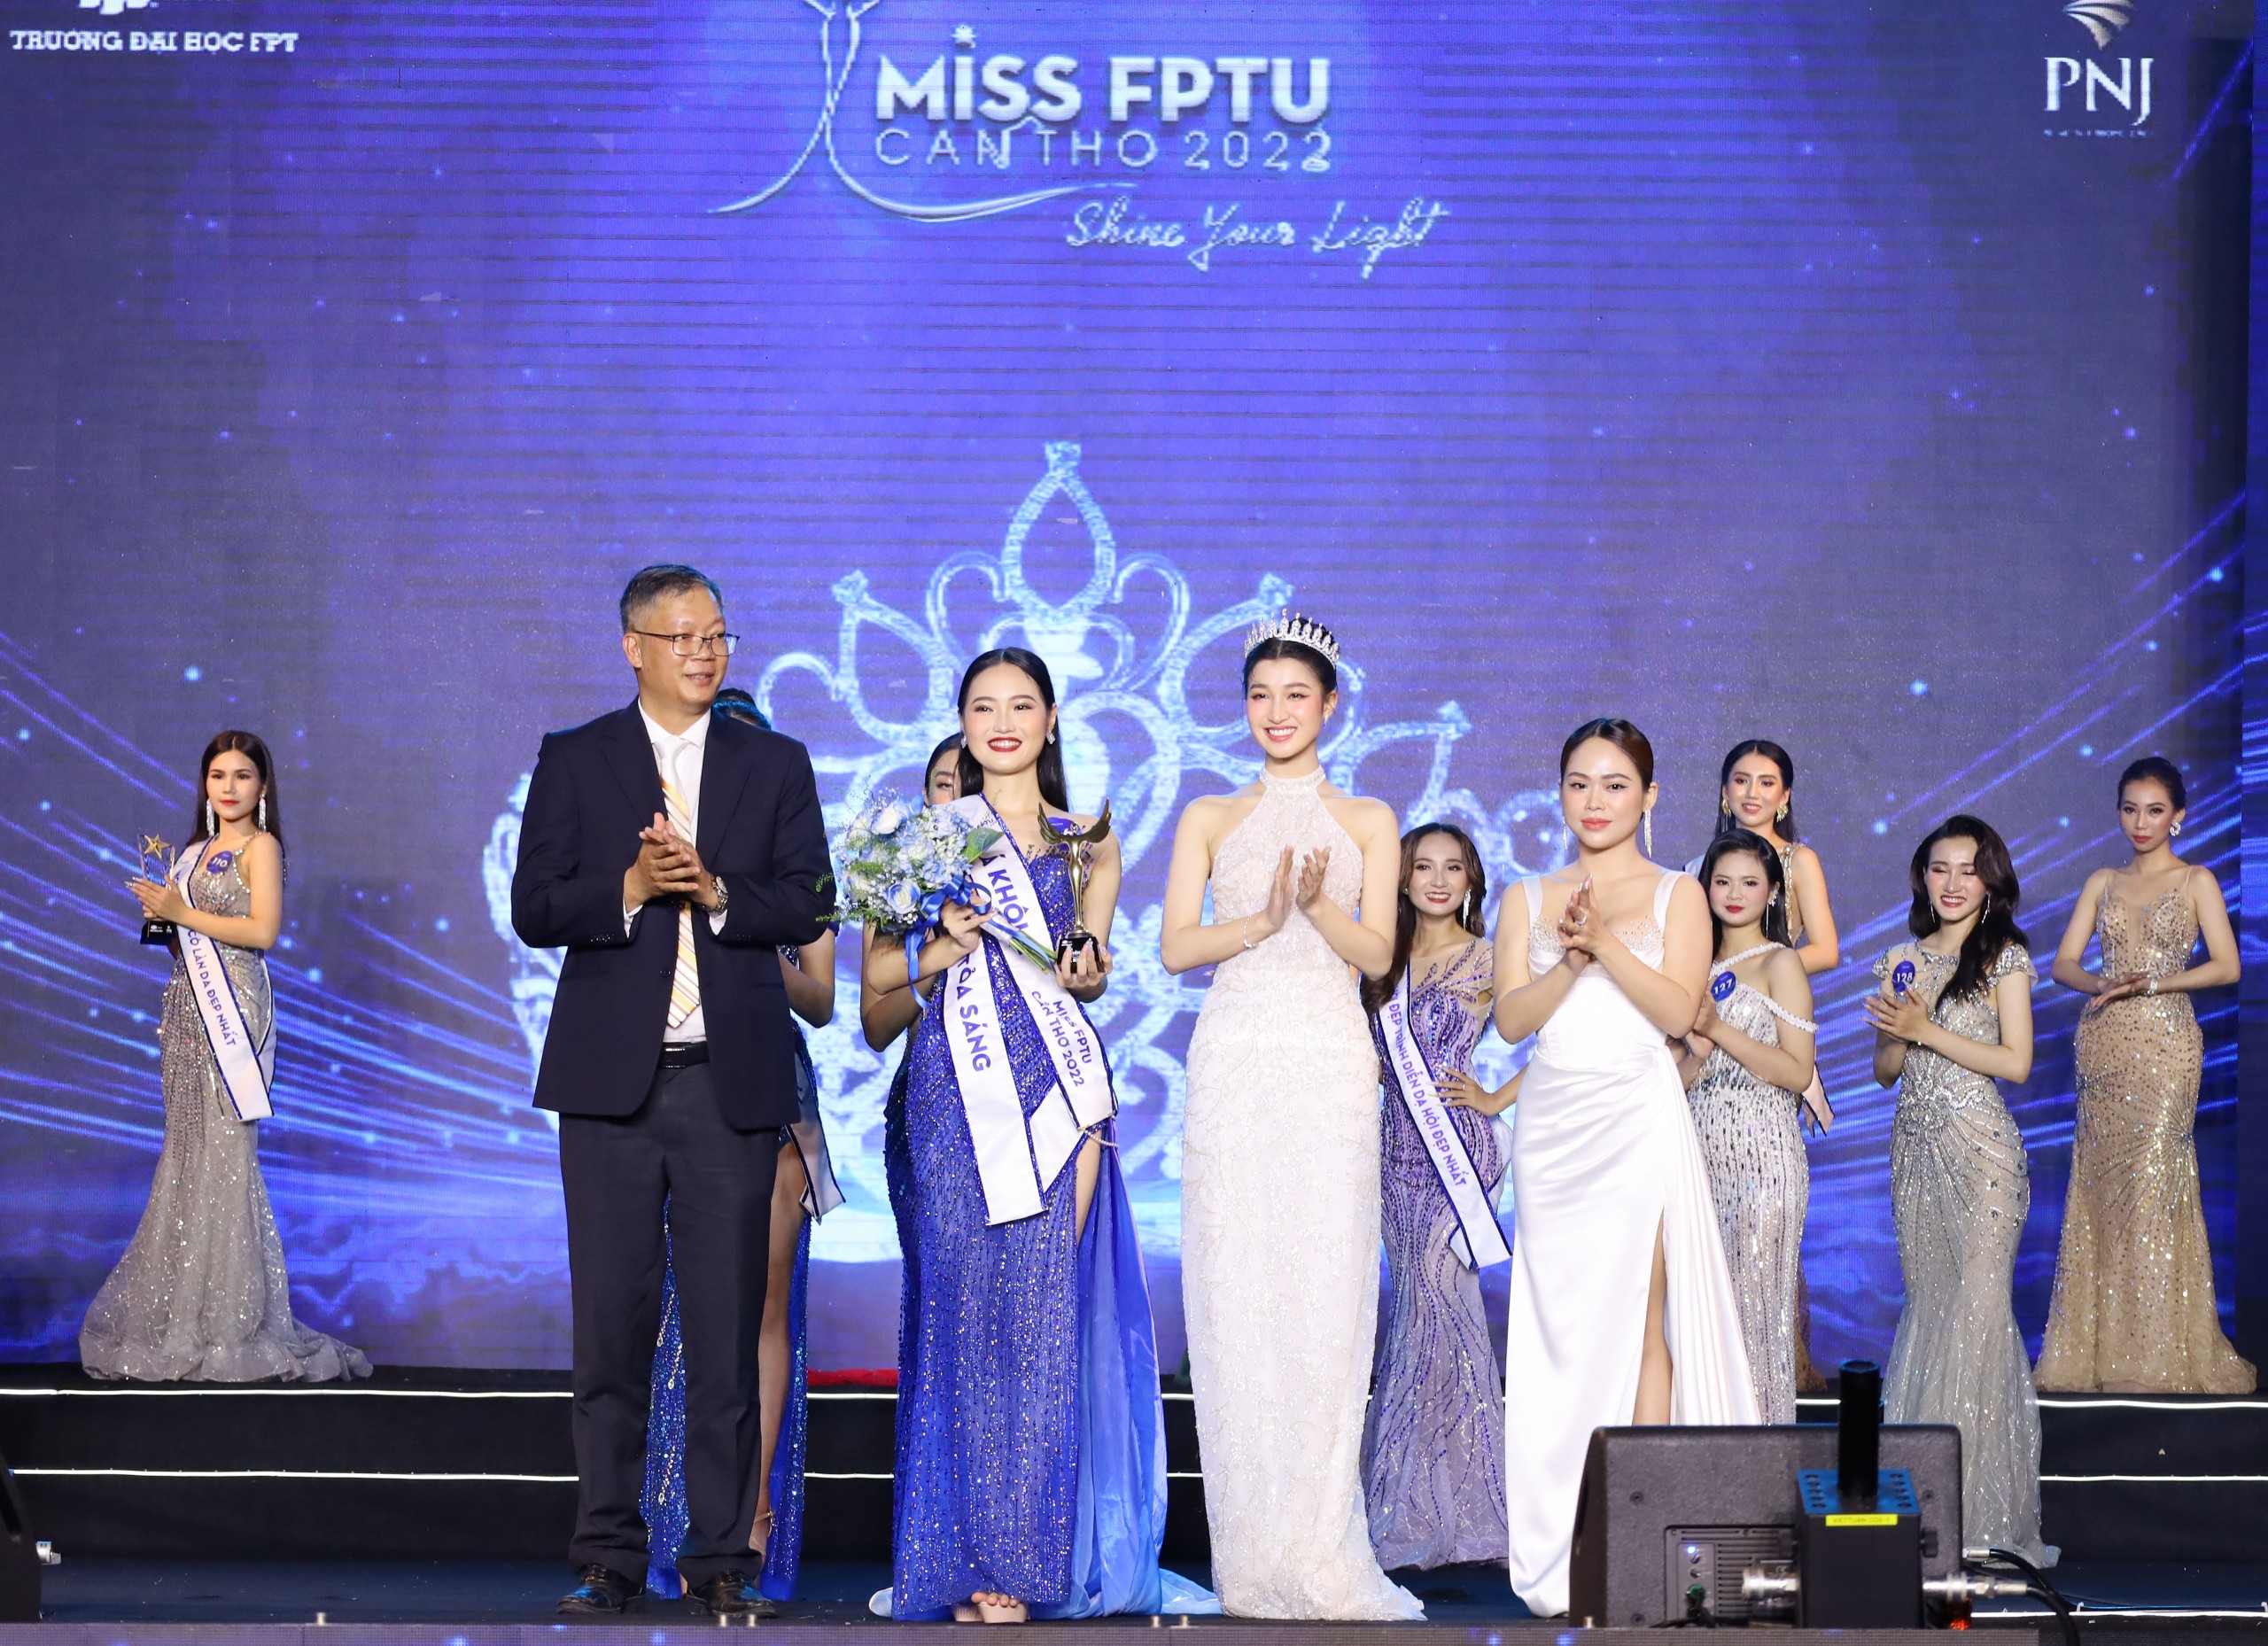 Á hậu 2 Miss World Vietnam 2022 - Nguyễn Phương Nhi và nhà tài trợ trao giải cho Á khôi 2 - Phan Hải Như.